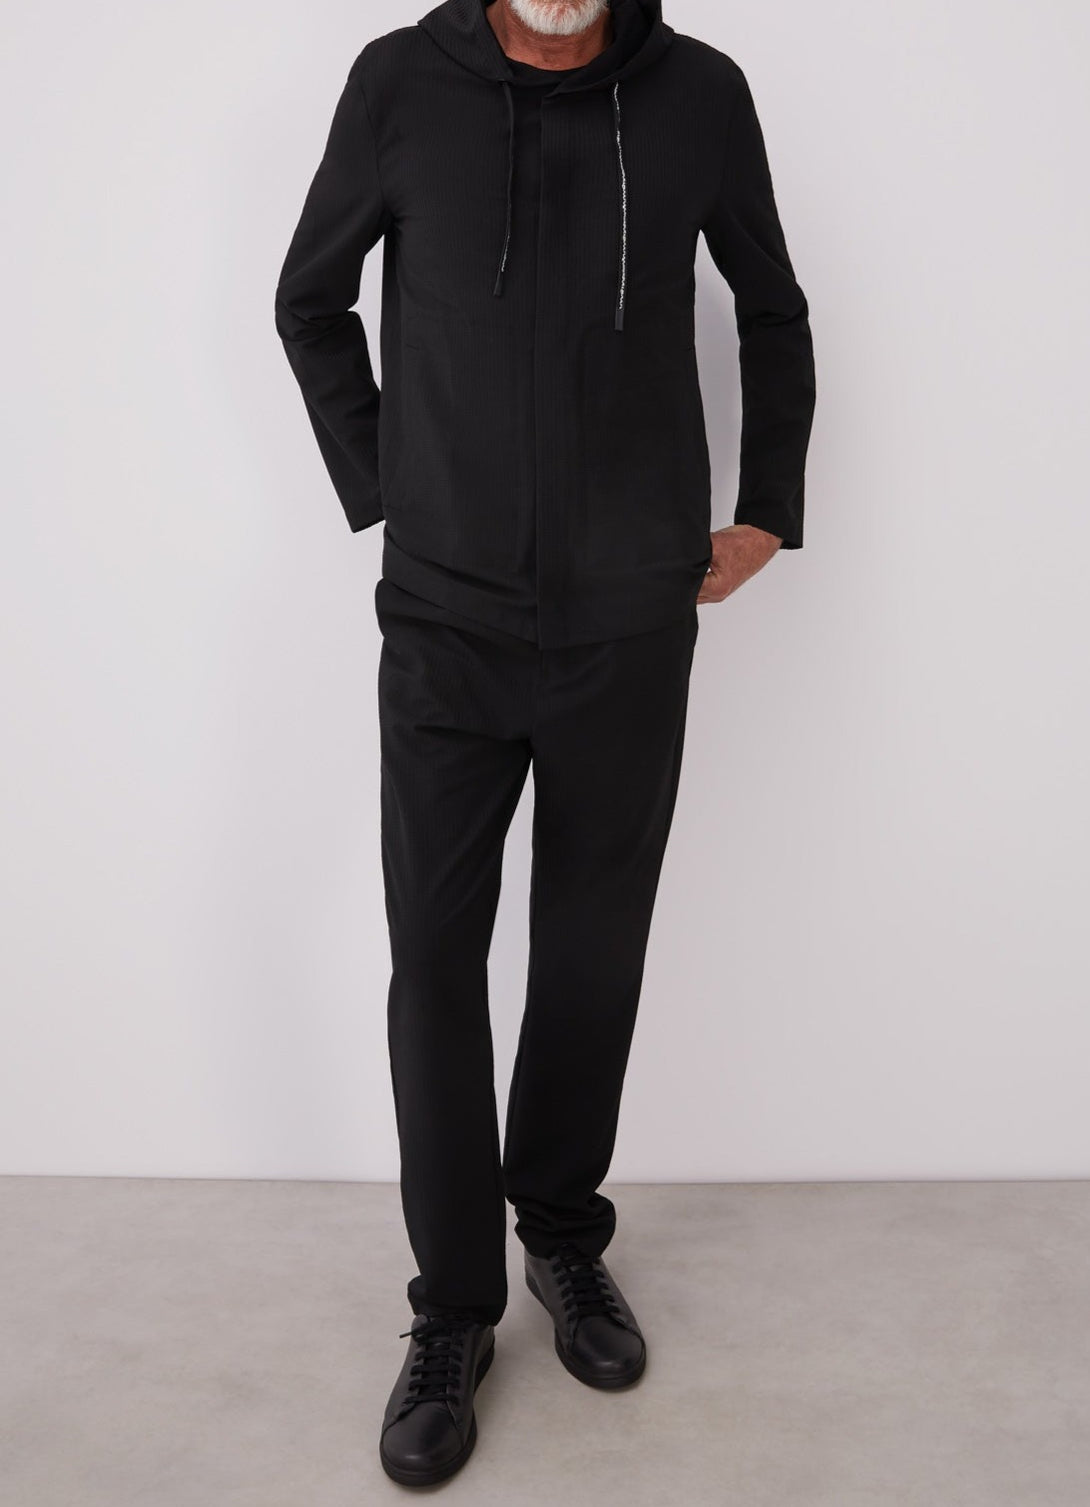 Men Overshirt | Black Hooded Overshirt With Logoed Laces by Spanish designer Adolfo Dominguez